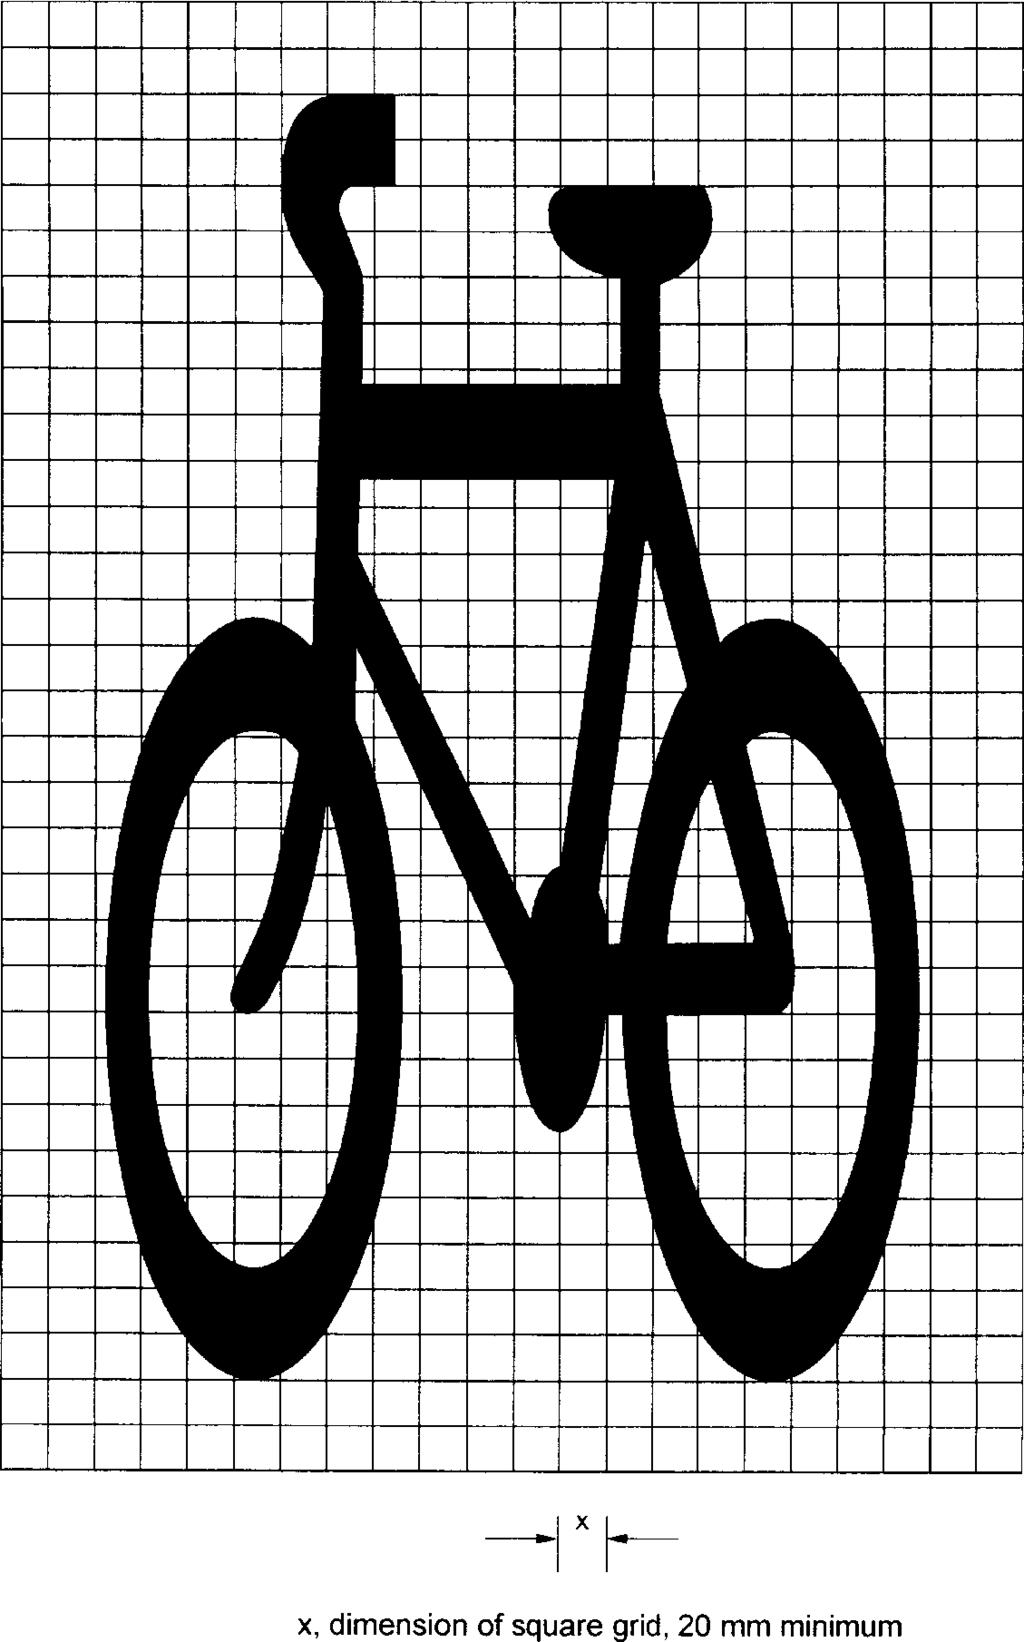 M2-3 - Cycle lane symbol 176 Brookers